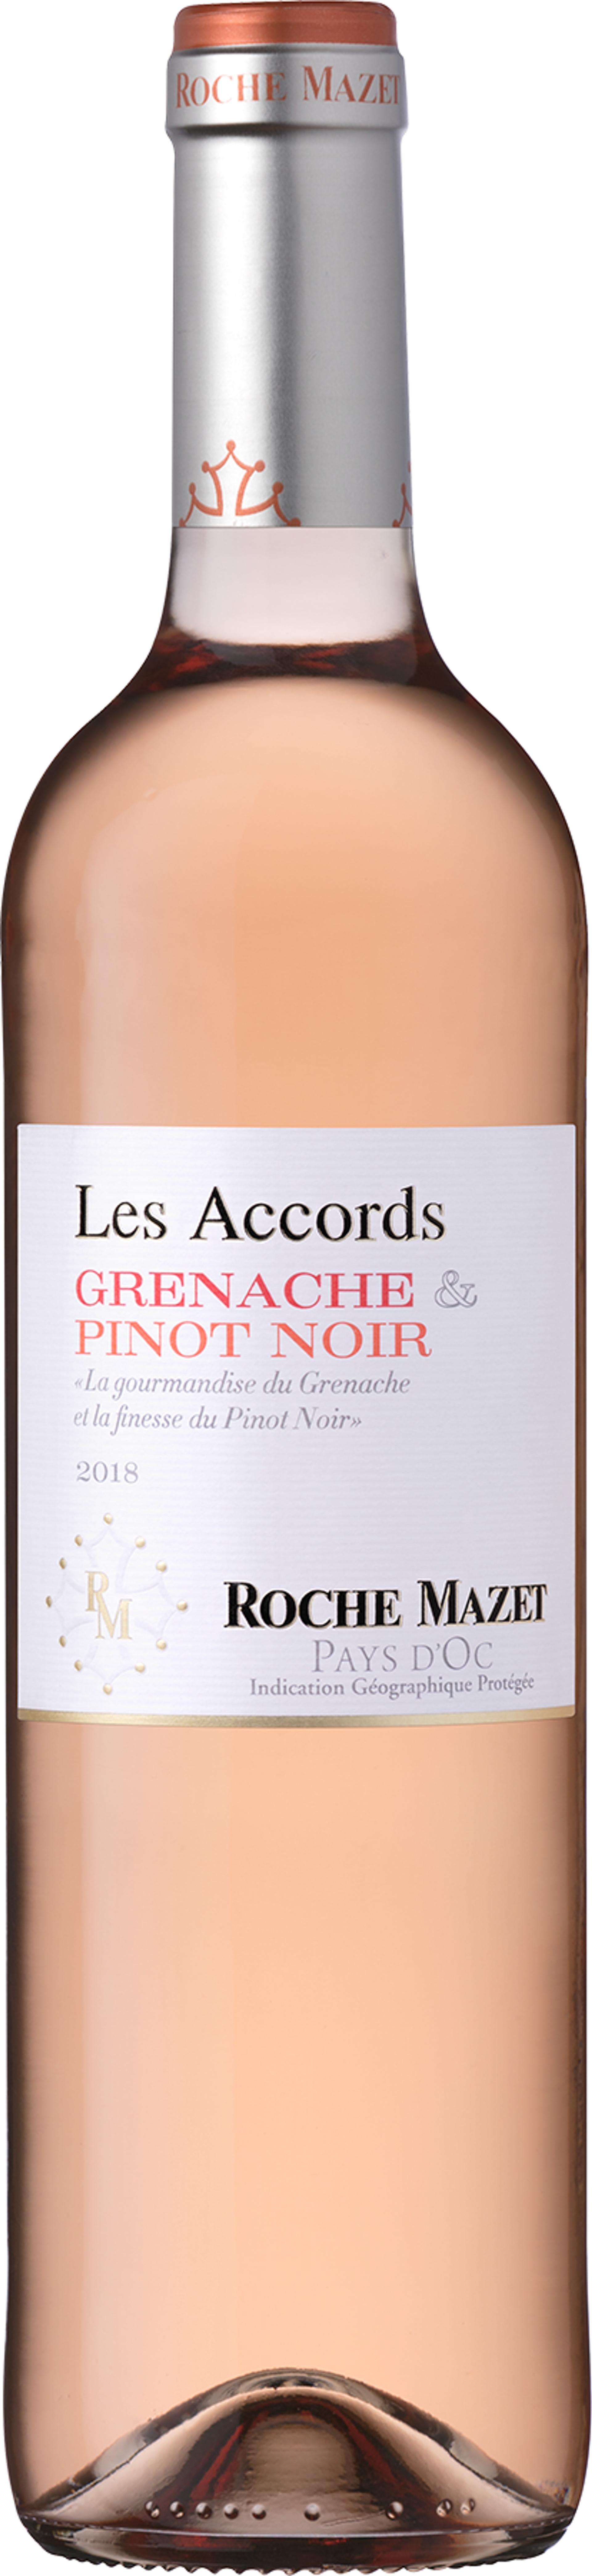 Les Accords Grenache & Pinot Noir